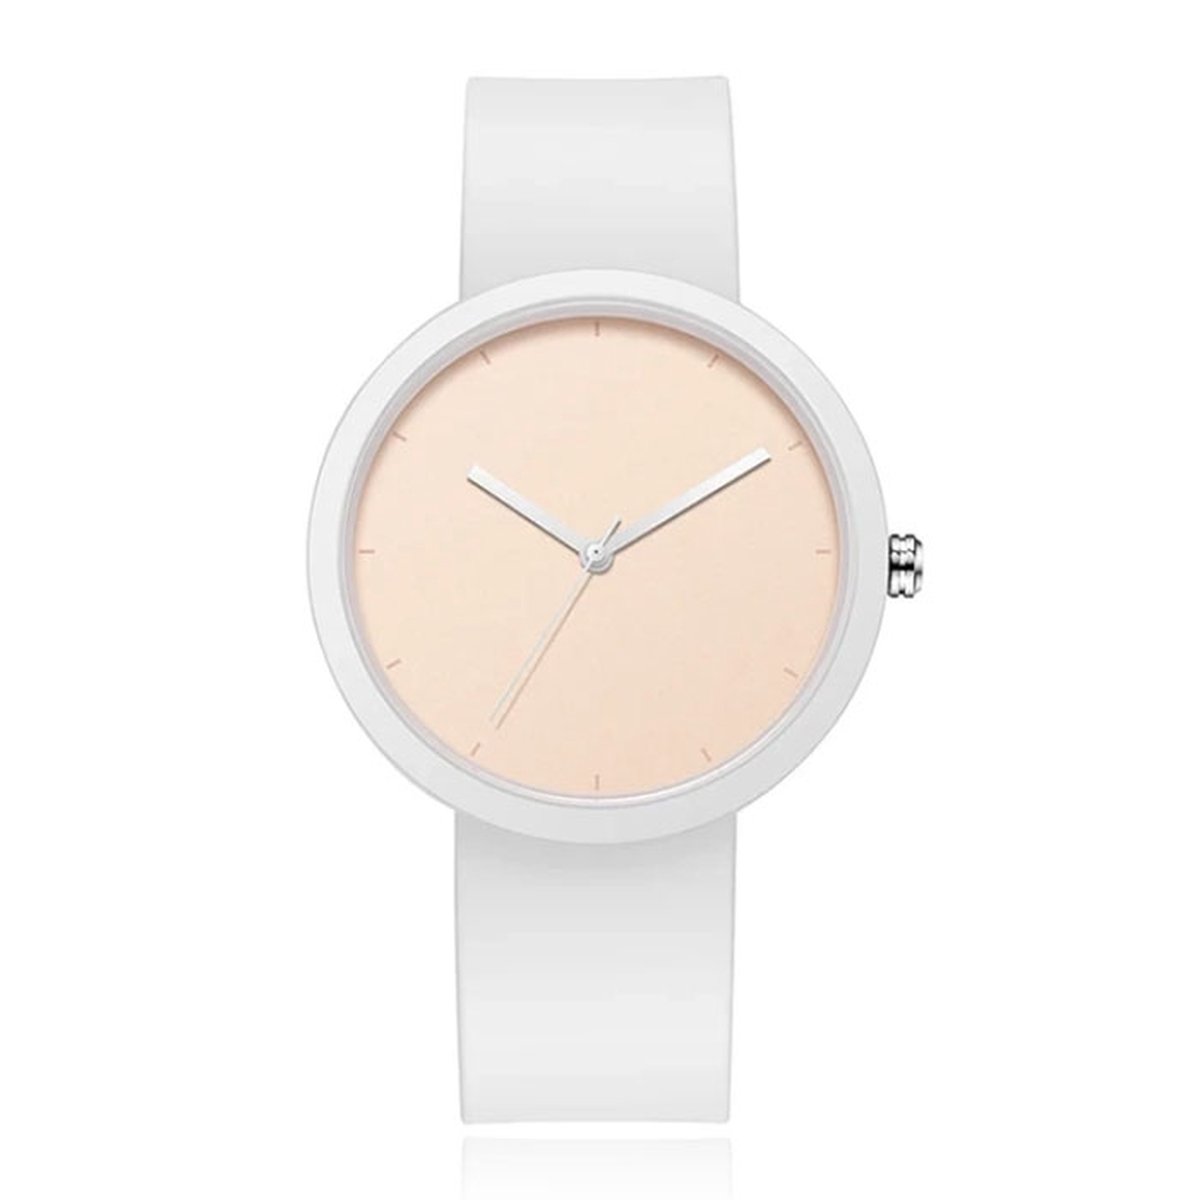 LGT JWLS Dameshorloge met Witte Rubberen Band - Witte Horlogekast met PVD Coating, Minimalistisch Design